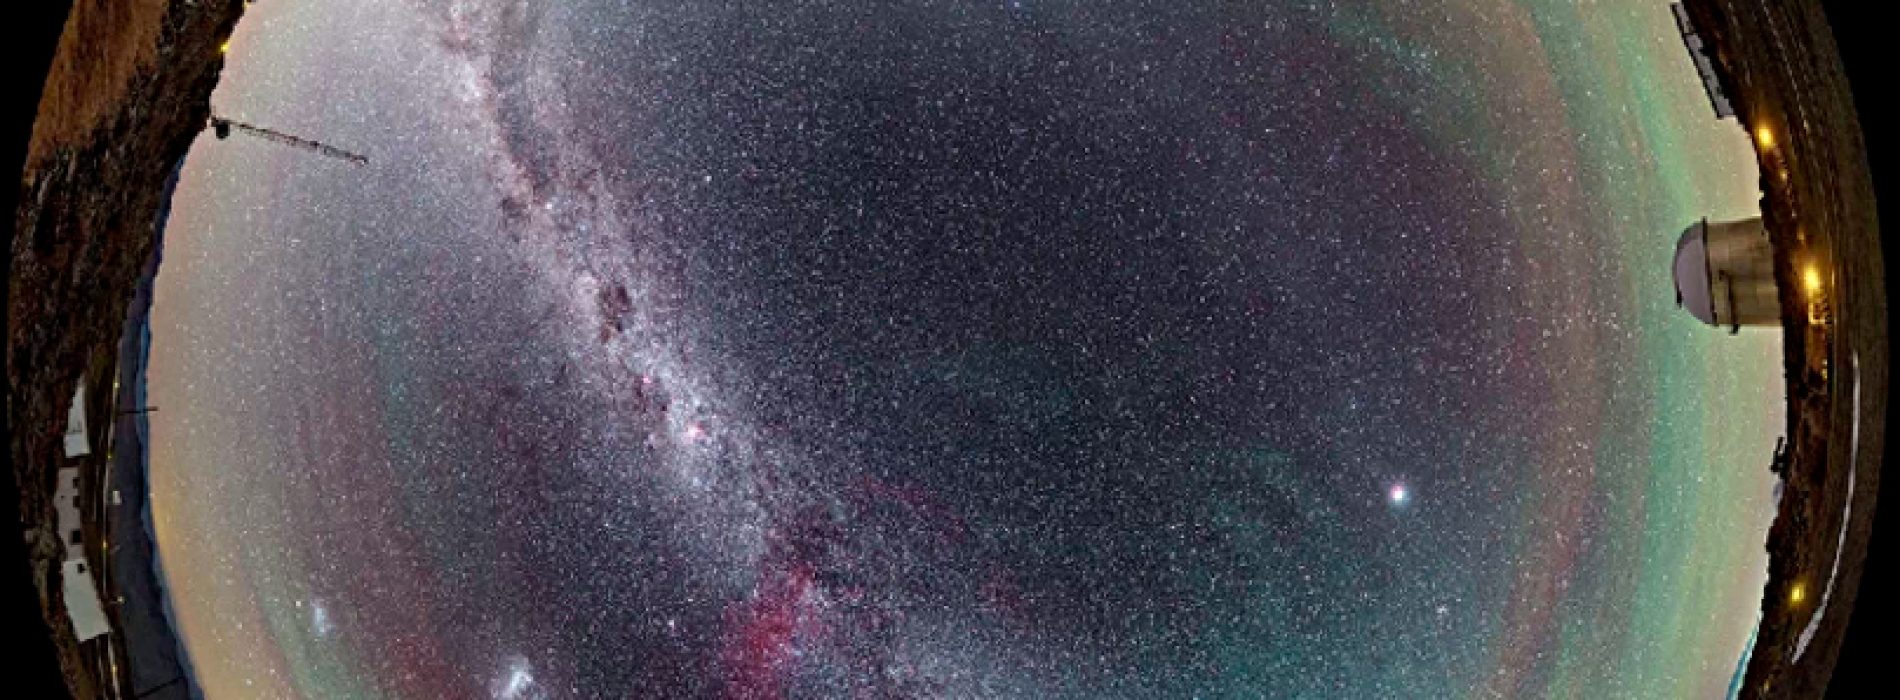 Baje de internet los hallazgos astronómicos más espectaculares made in Chile